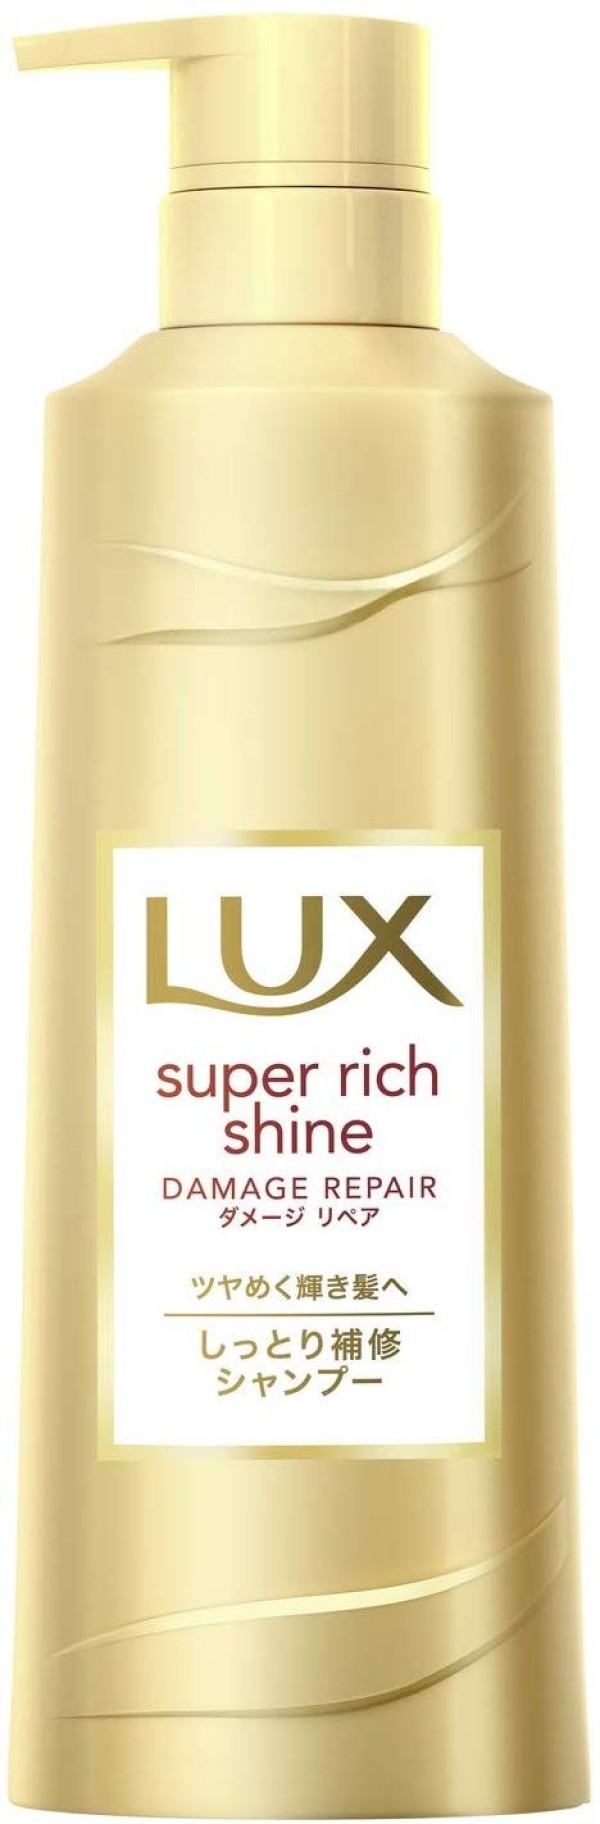 Восстанавливающий шампунь для поврежденных волос LUX Super Rich Shine Damage Repair Shampoo